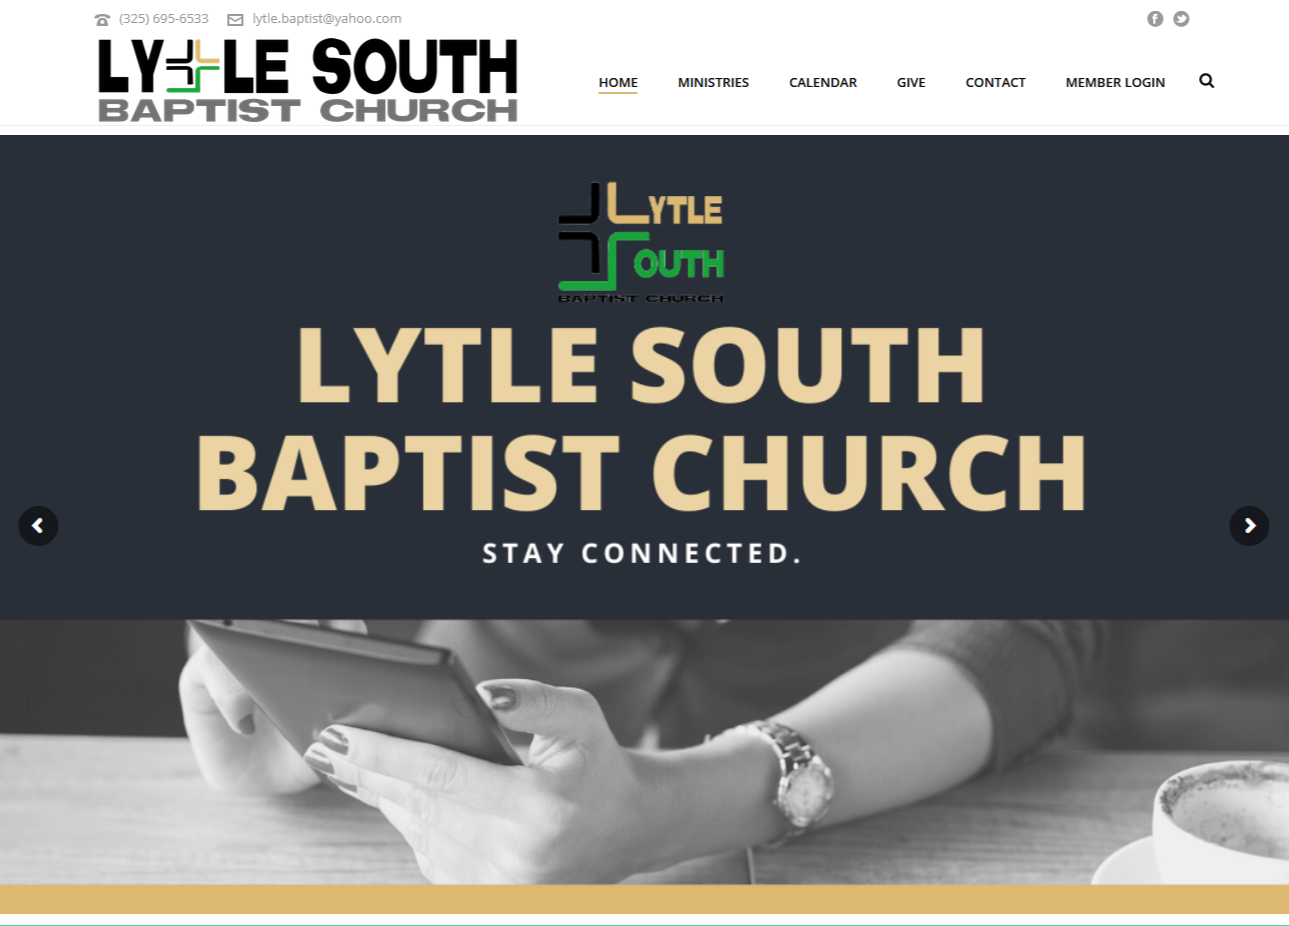 Lytle South Baptist Church